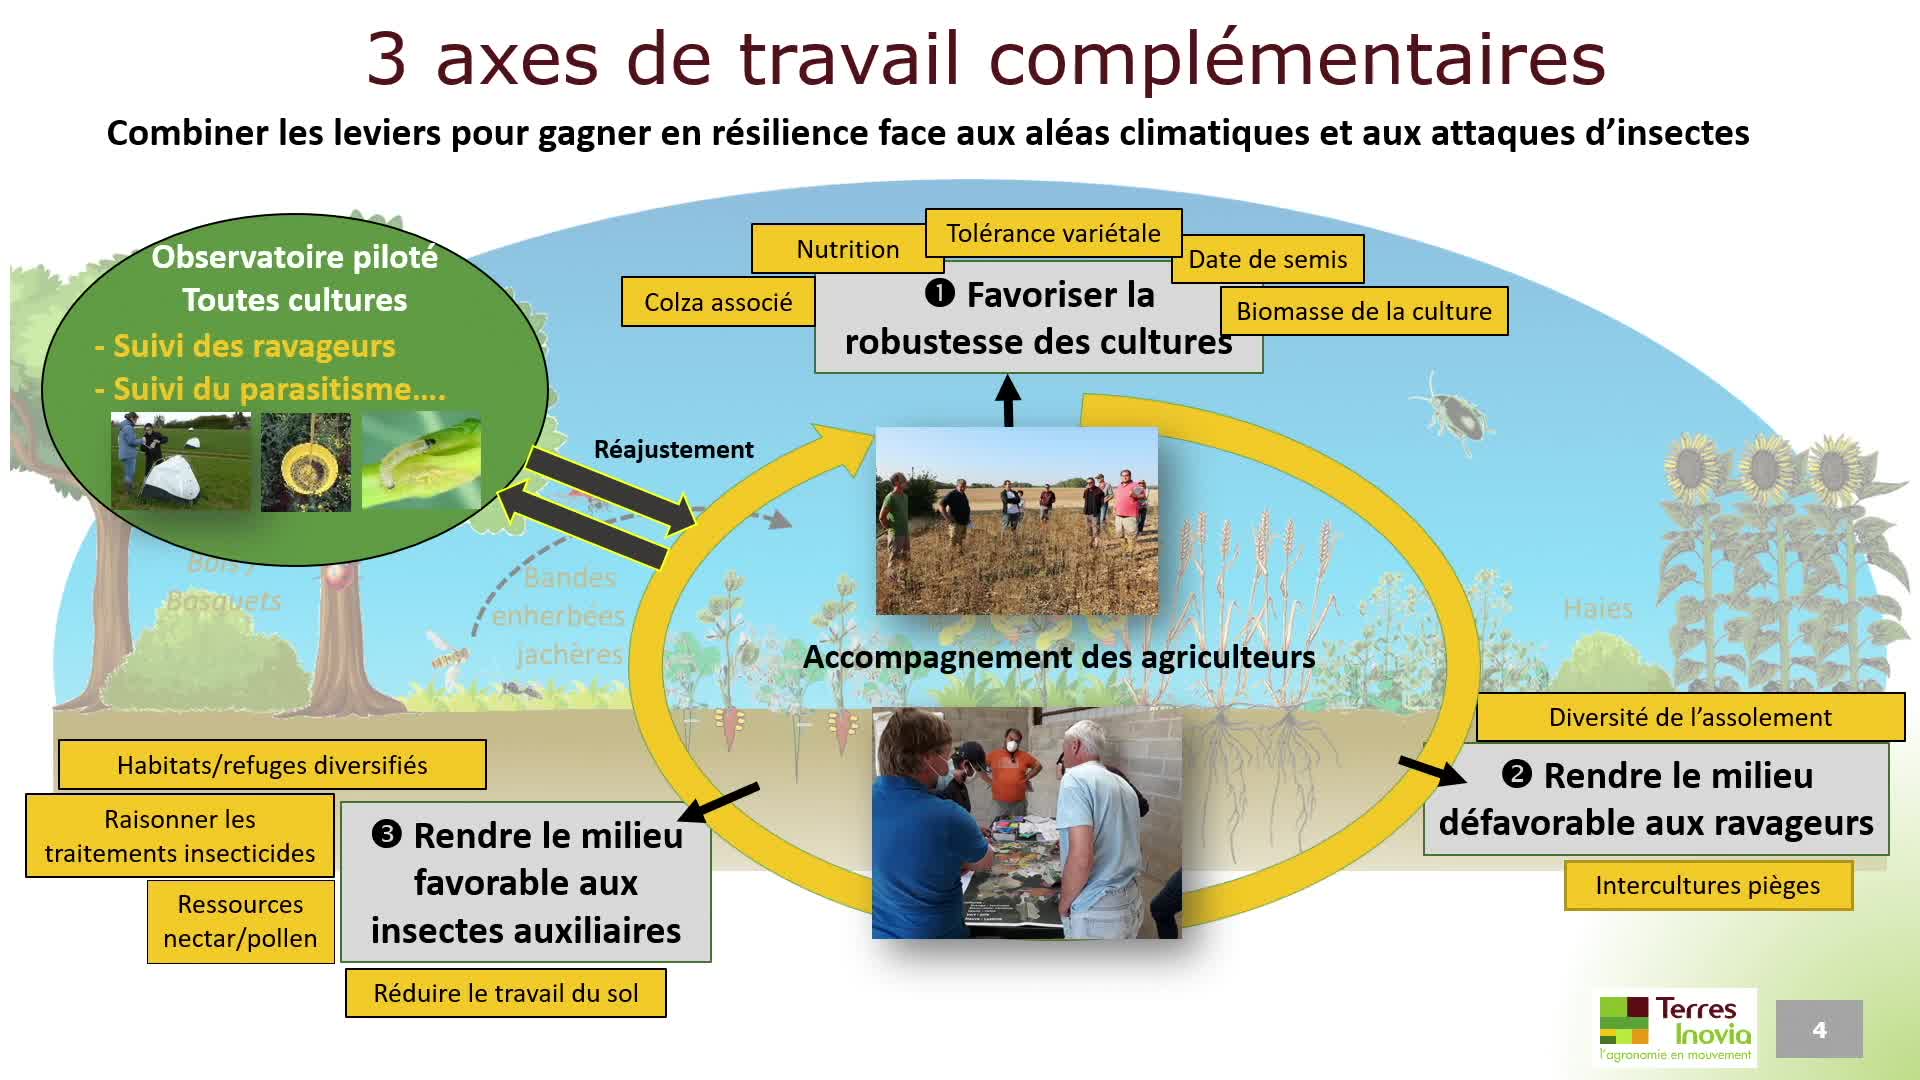 Limitation des dégâts d’insectes L’approche territoriale originale déployée dans le projet R2D2 en Bourgogne